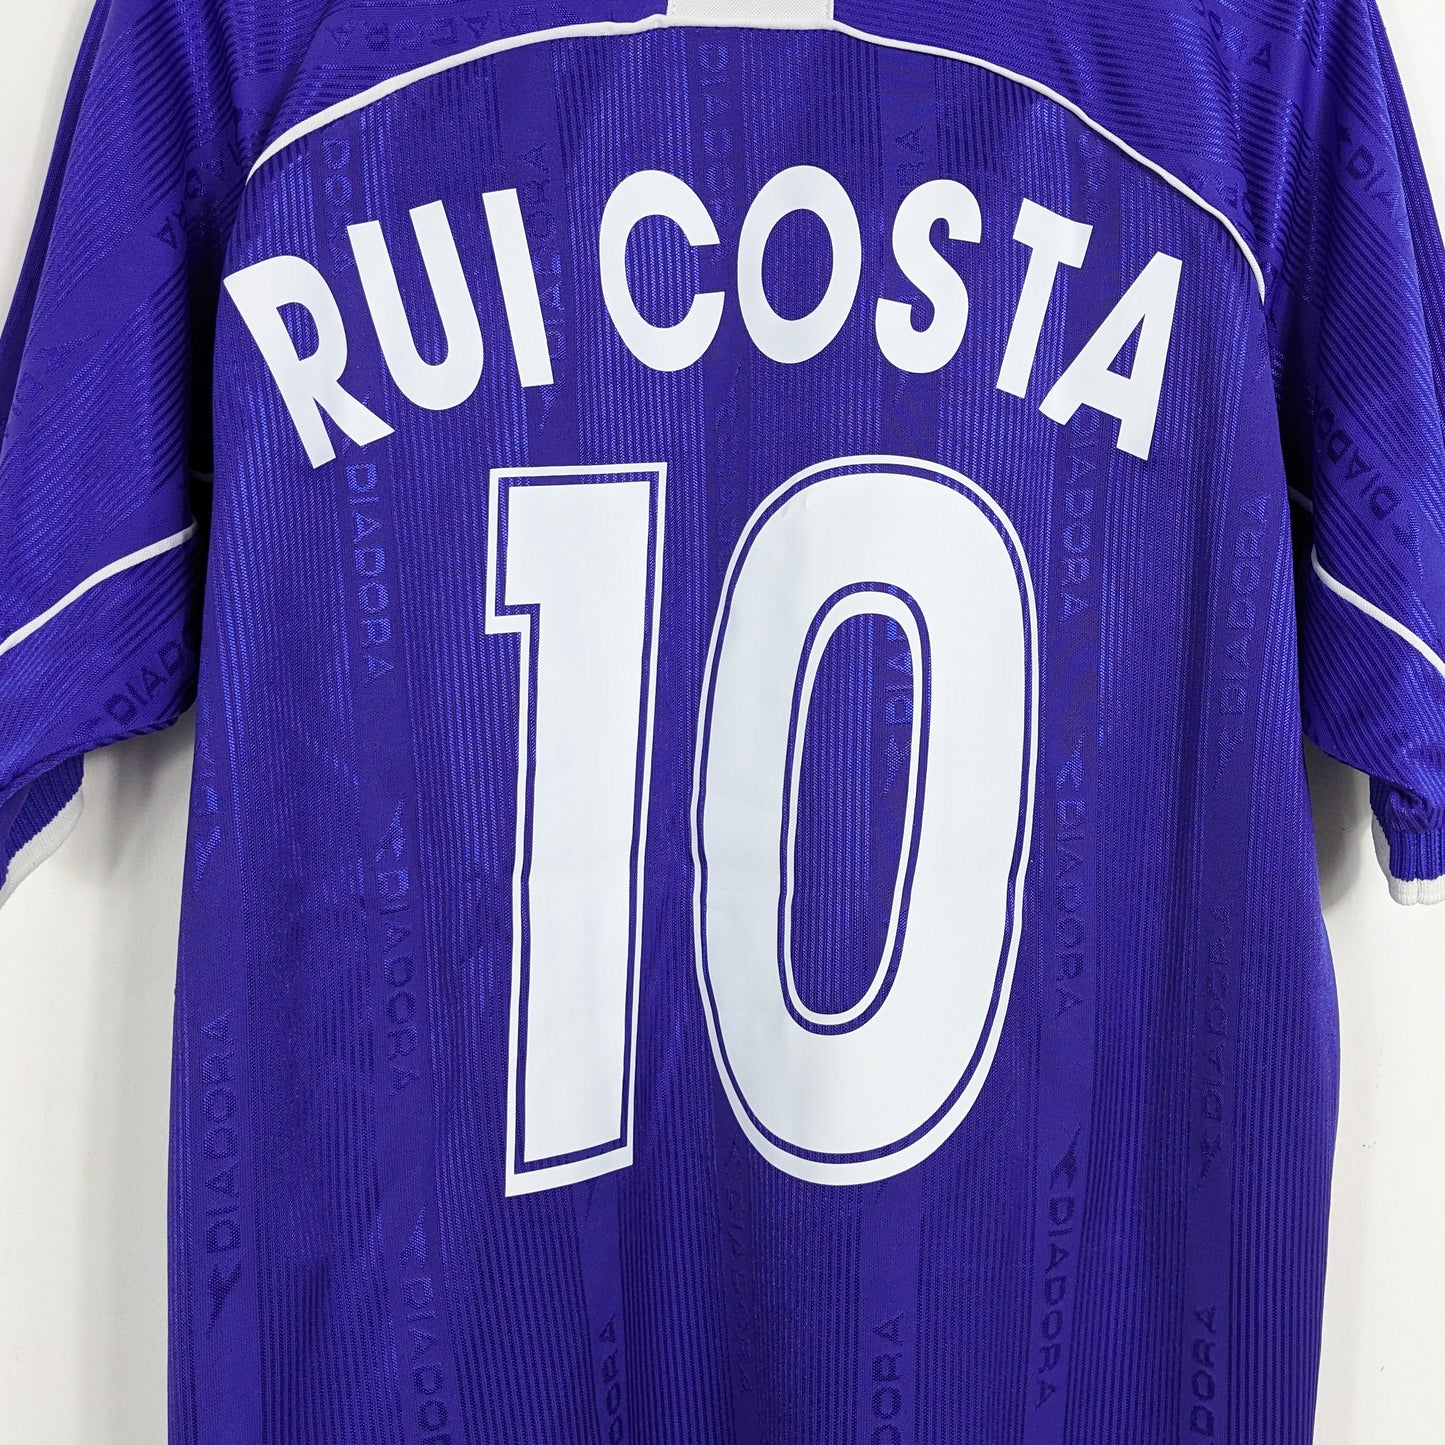 Authentic Fiorentina 2000/2001 Home - Rui Costa #10 Size L